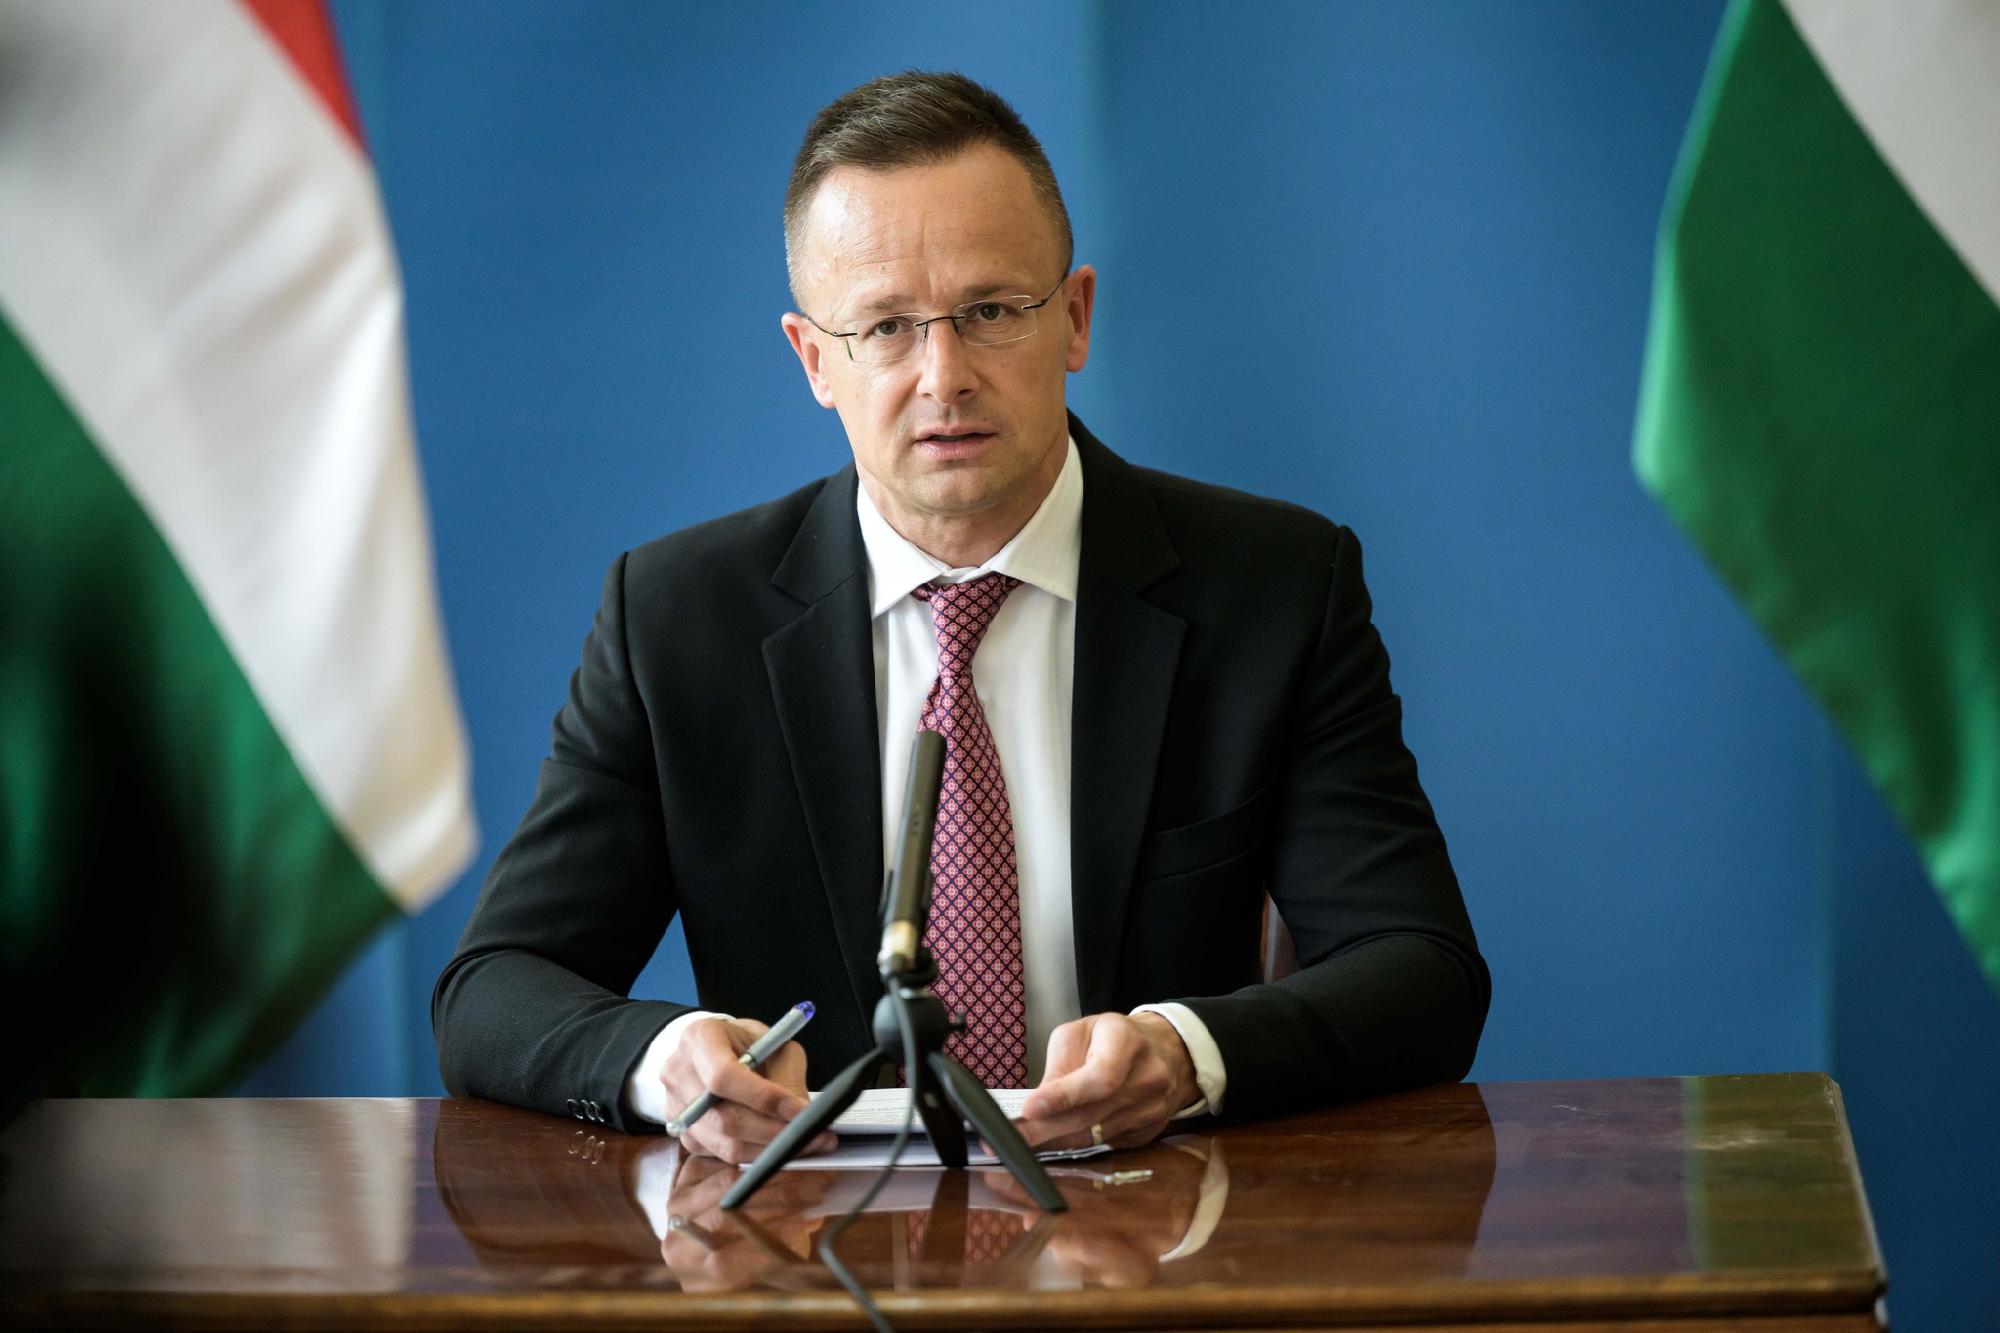  Szijjártó Péter: Magyarország megnyitotta kereskedelmi és konzuli képviseletét Kigaliban 